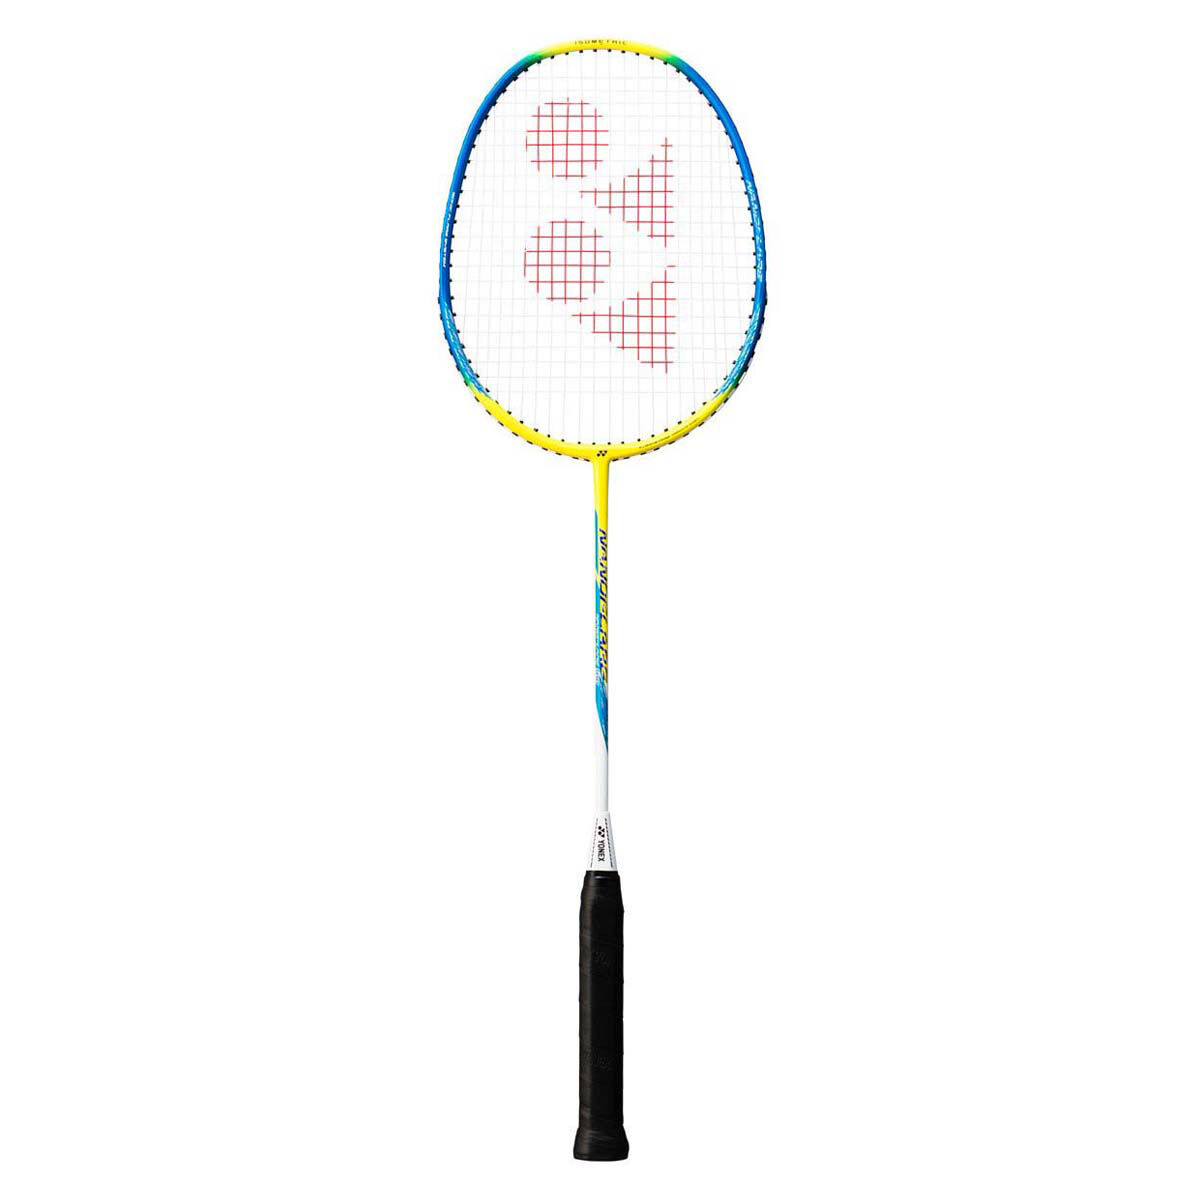 Won Grote hoeveelheid aanpassen Yonex Nanoflare 100 Badminton Racquet | Rebel Sport